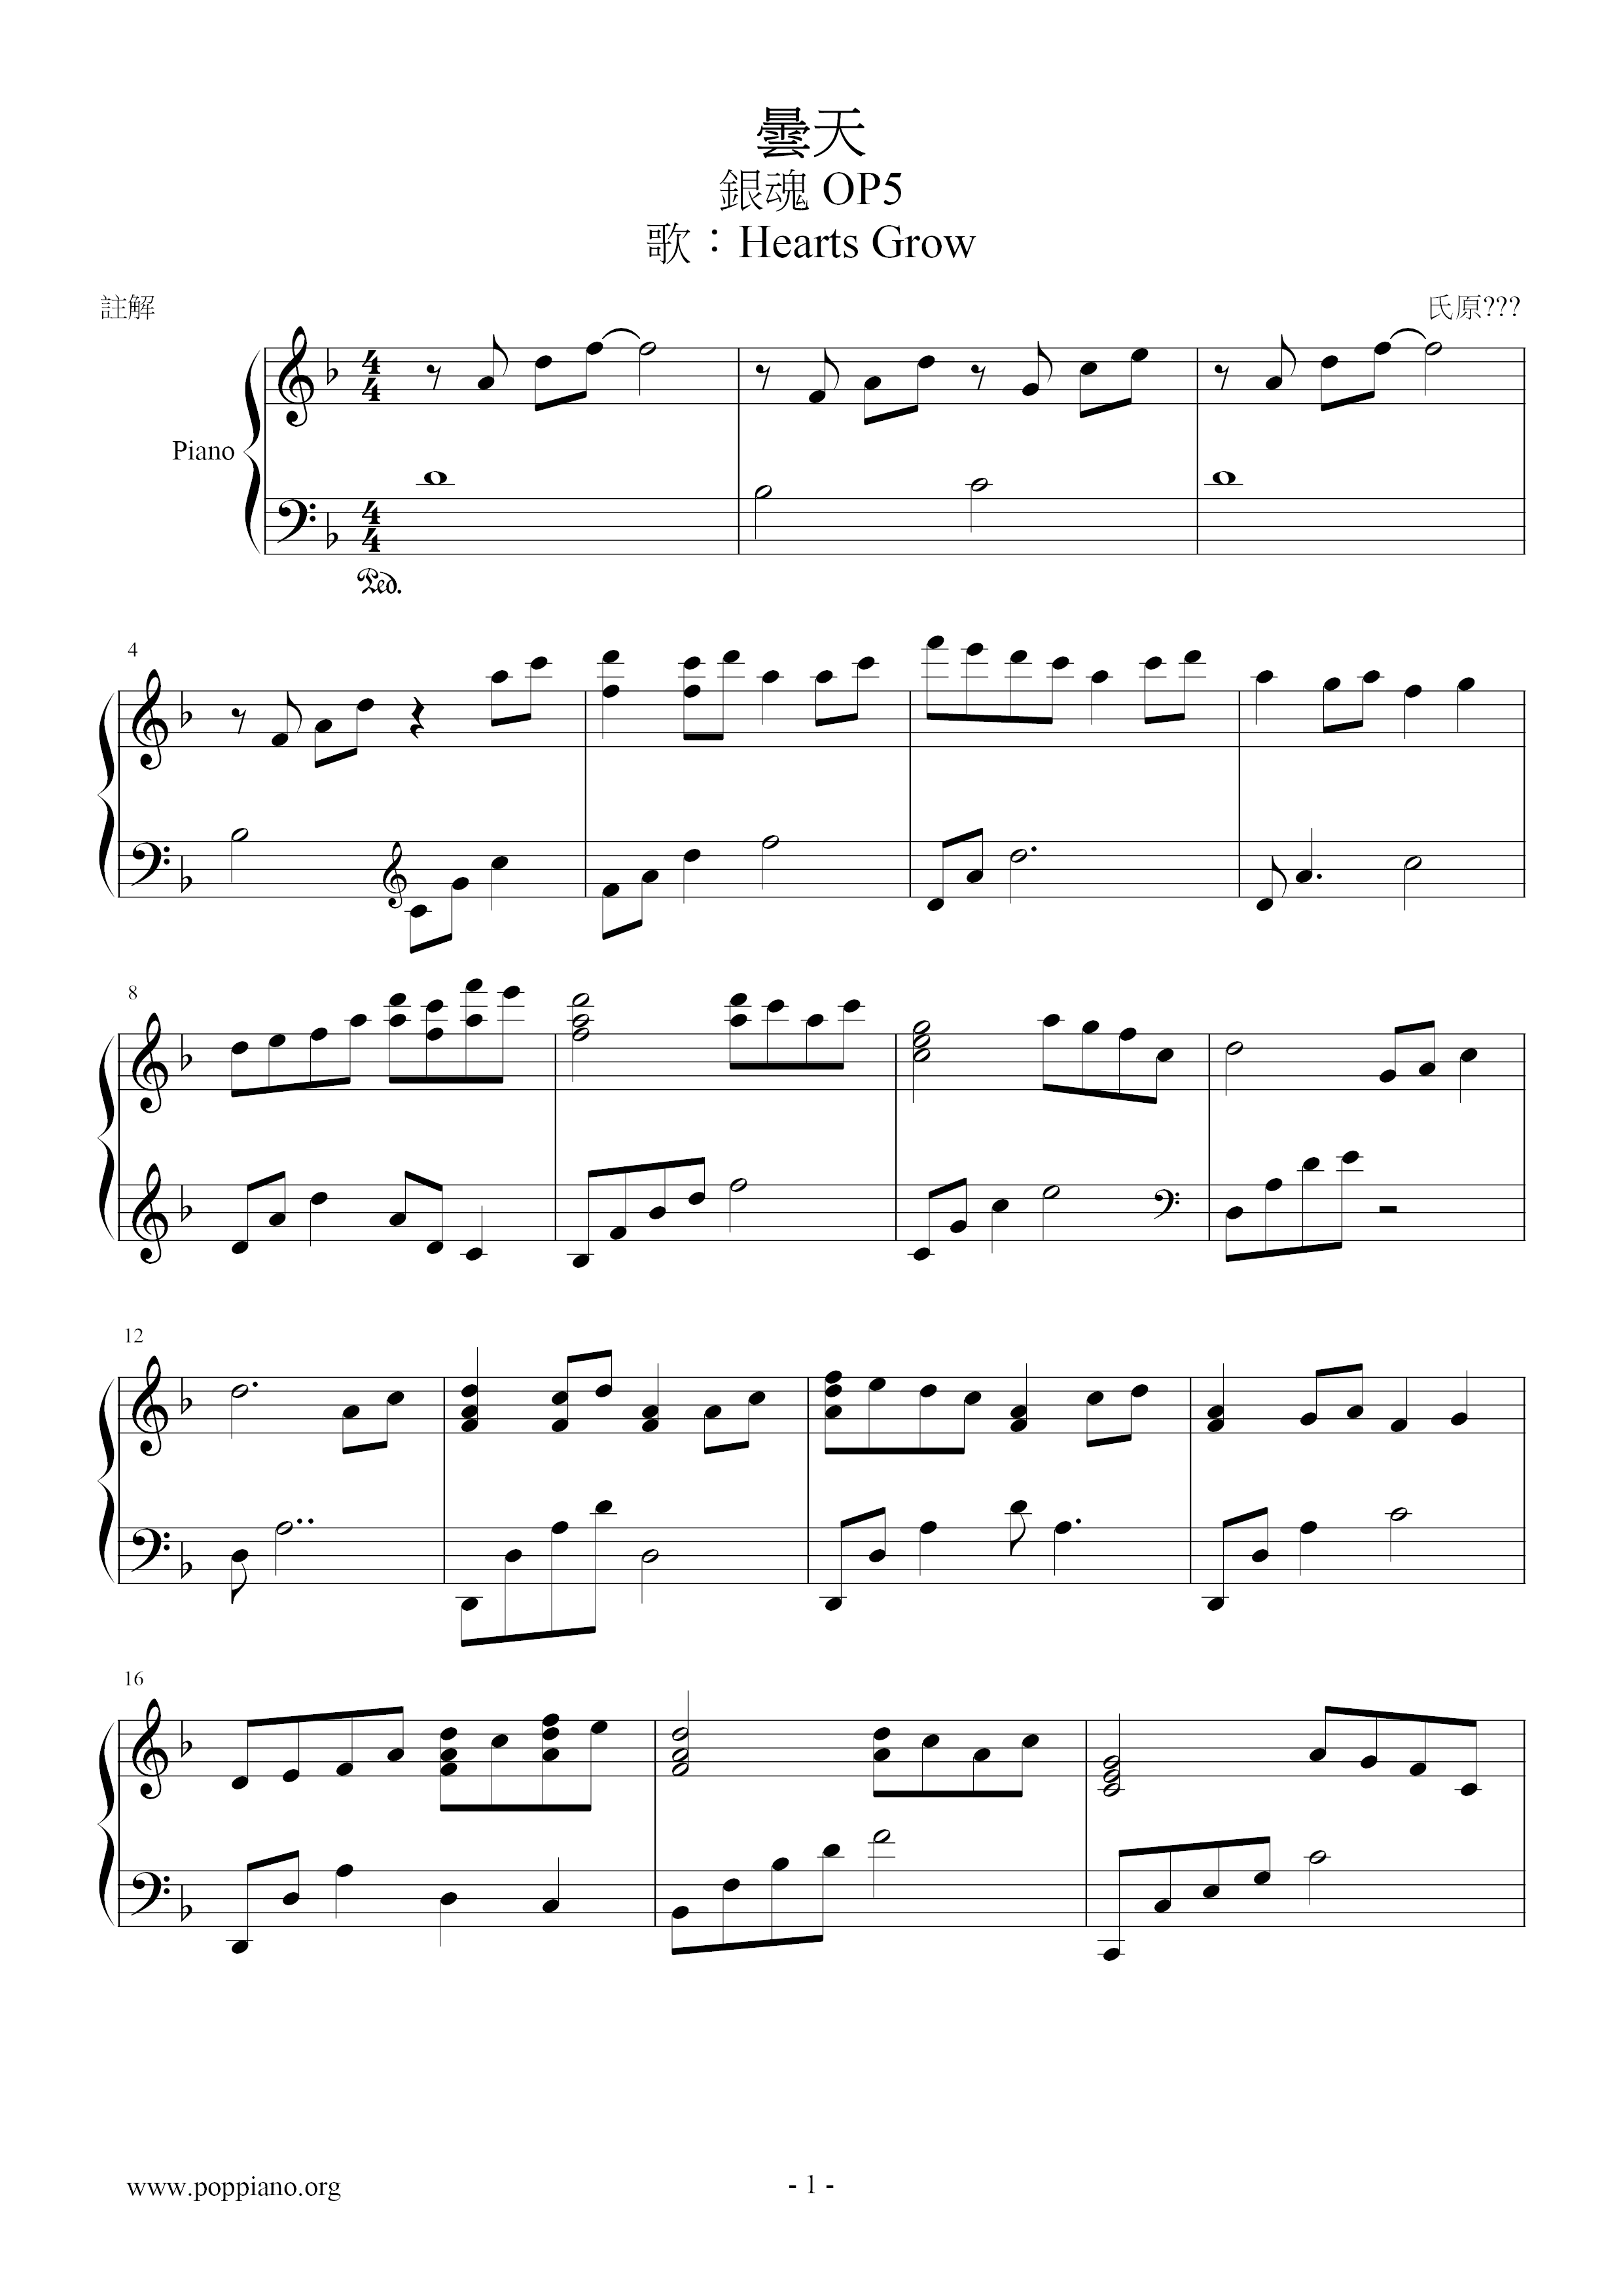 曇天(銀魂 op5)ピアノ譜